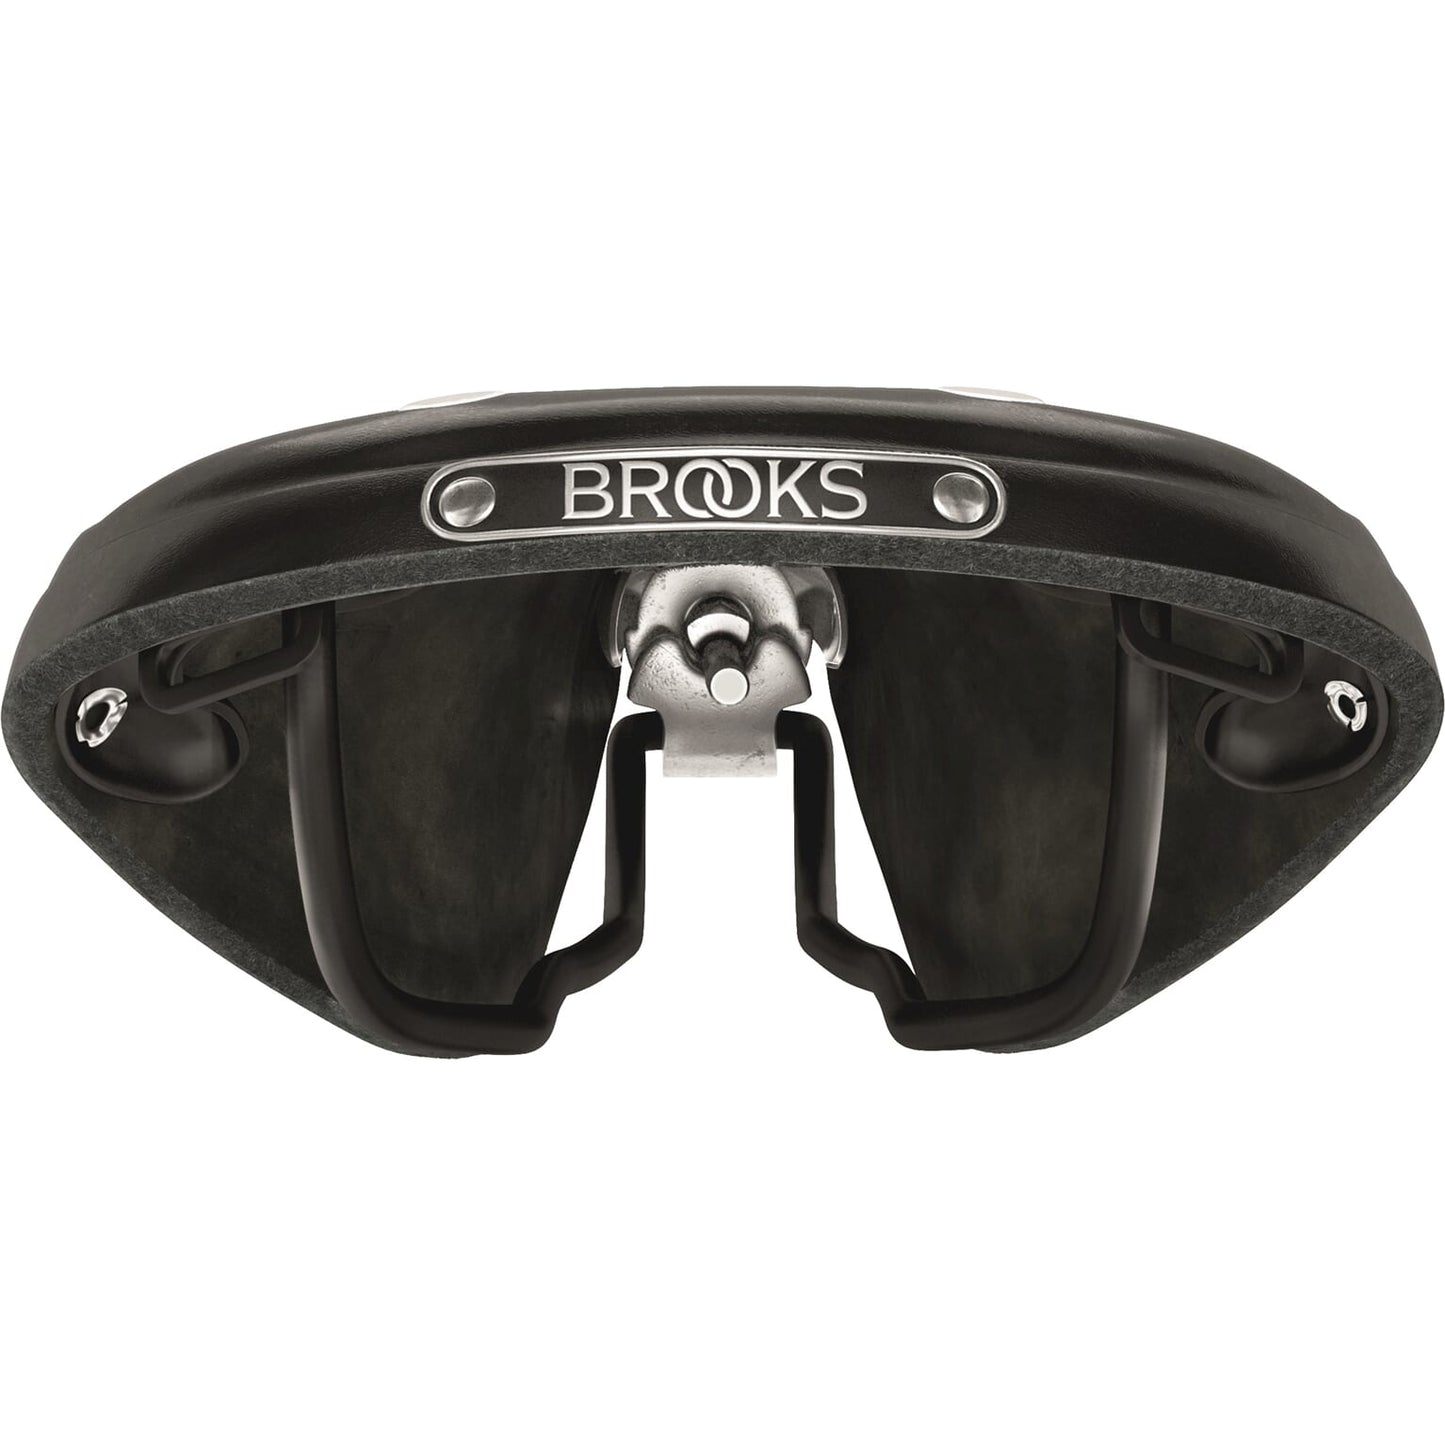 Brooks Saddle B17 Stretto nero